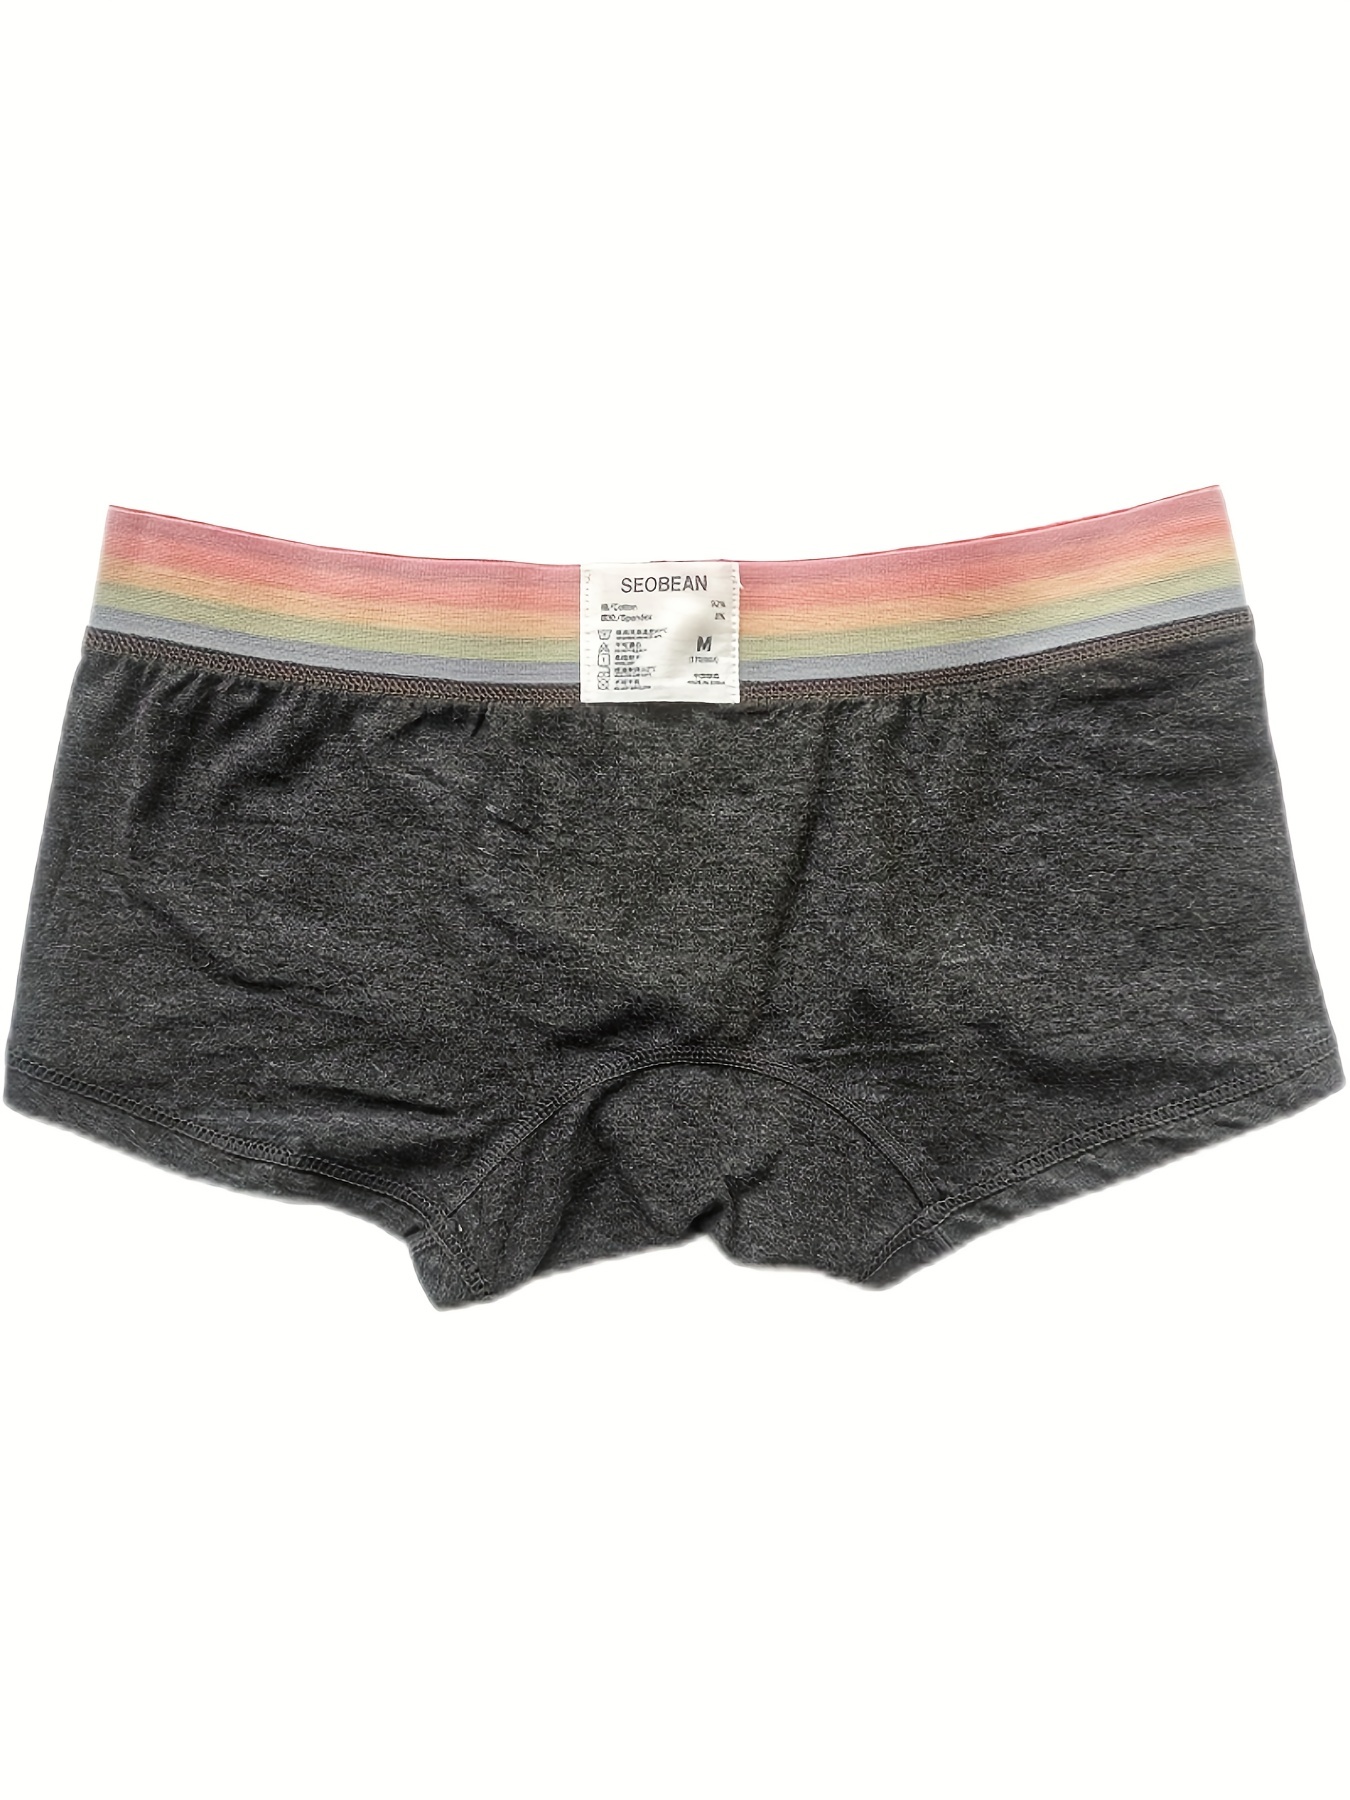 Men's Sexy underwear Cotton Low waist Briefs U pouch Boxer shorts